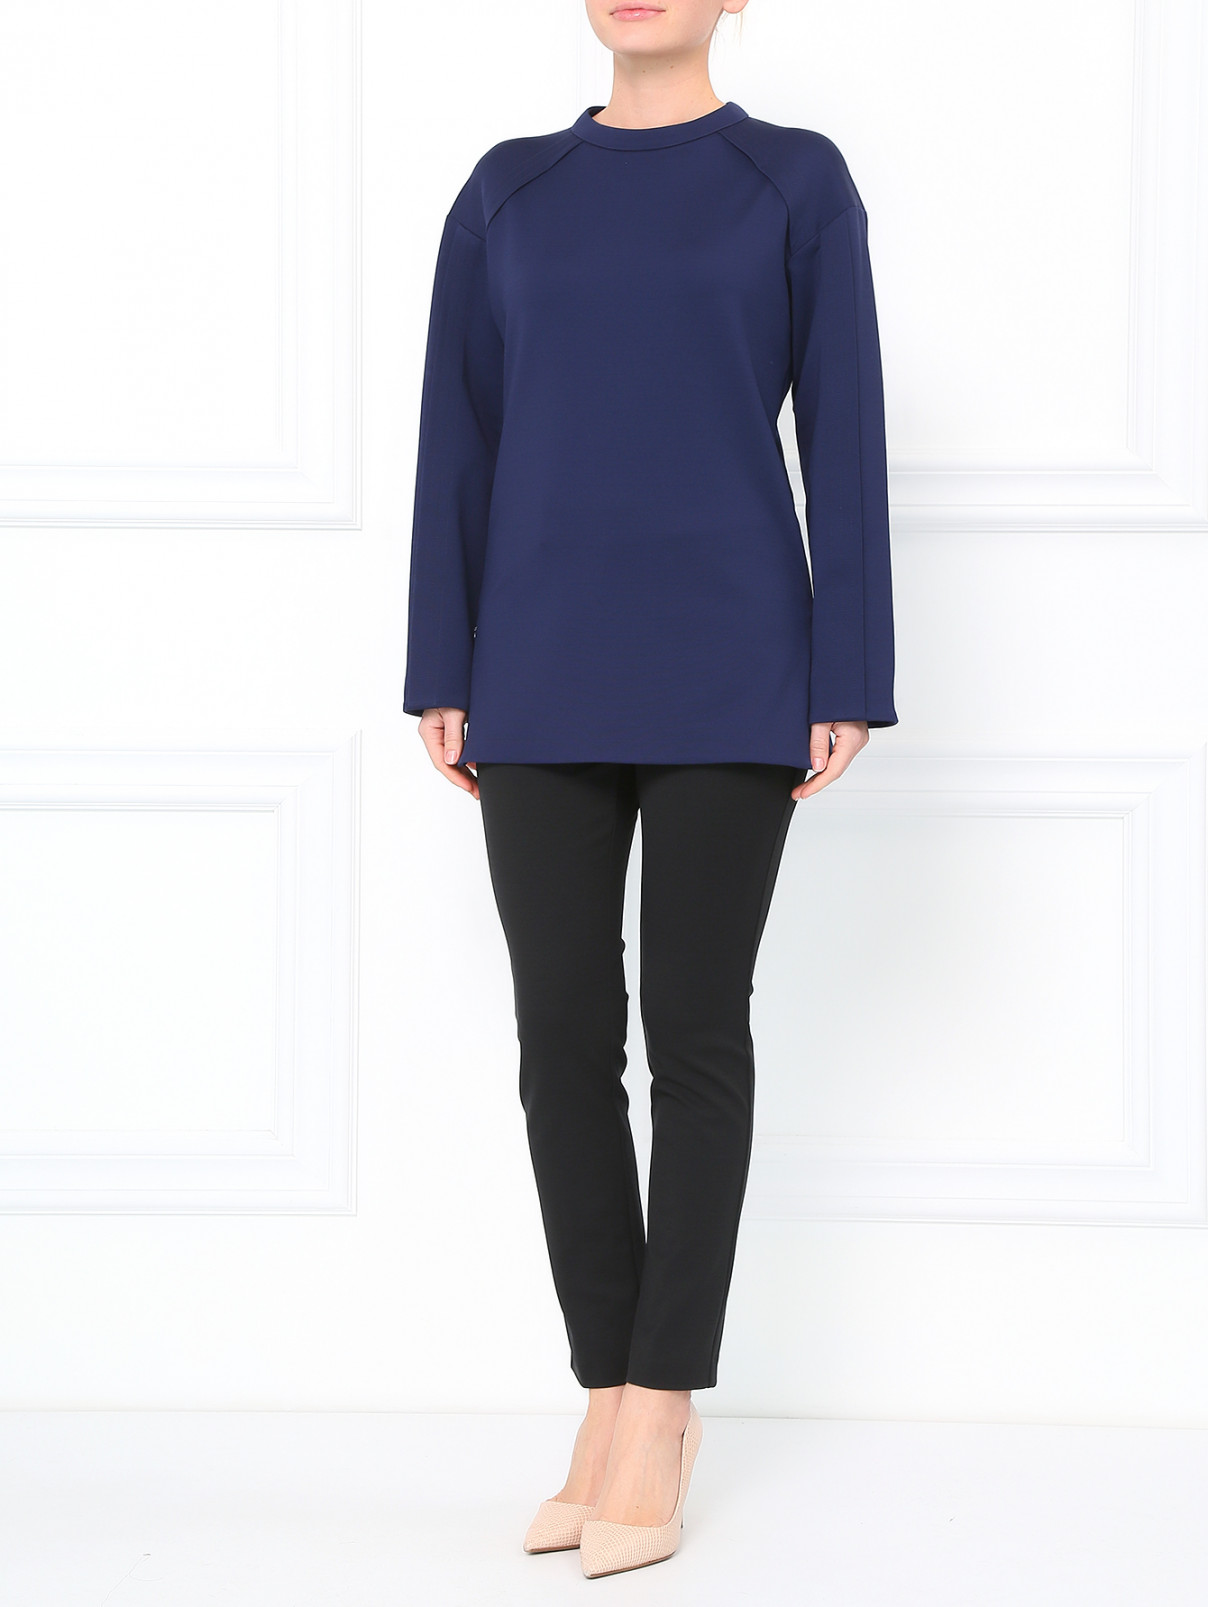 Узкие брюки Jil Sander  –  Модель Общий вид  – Цвет:  Черный